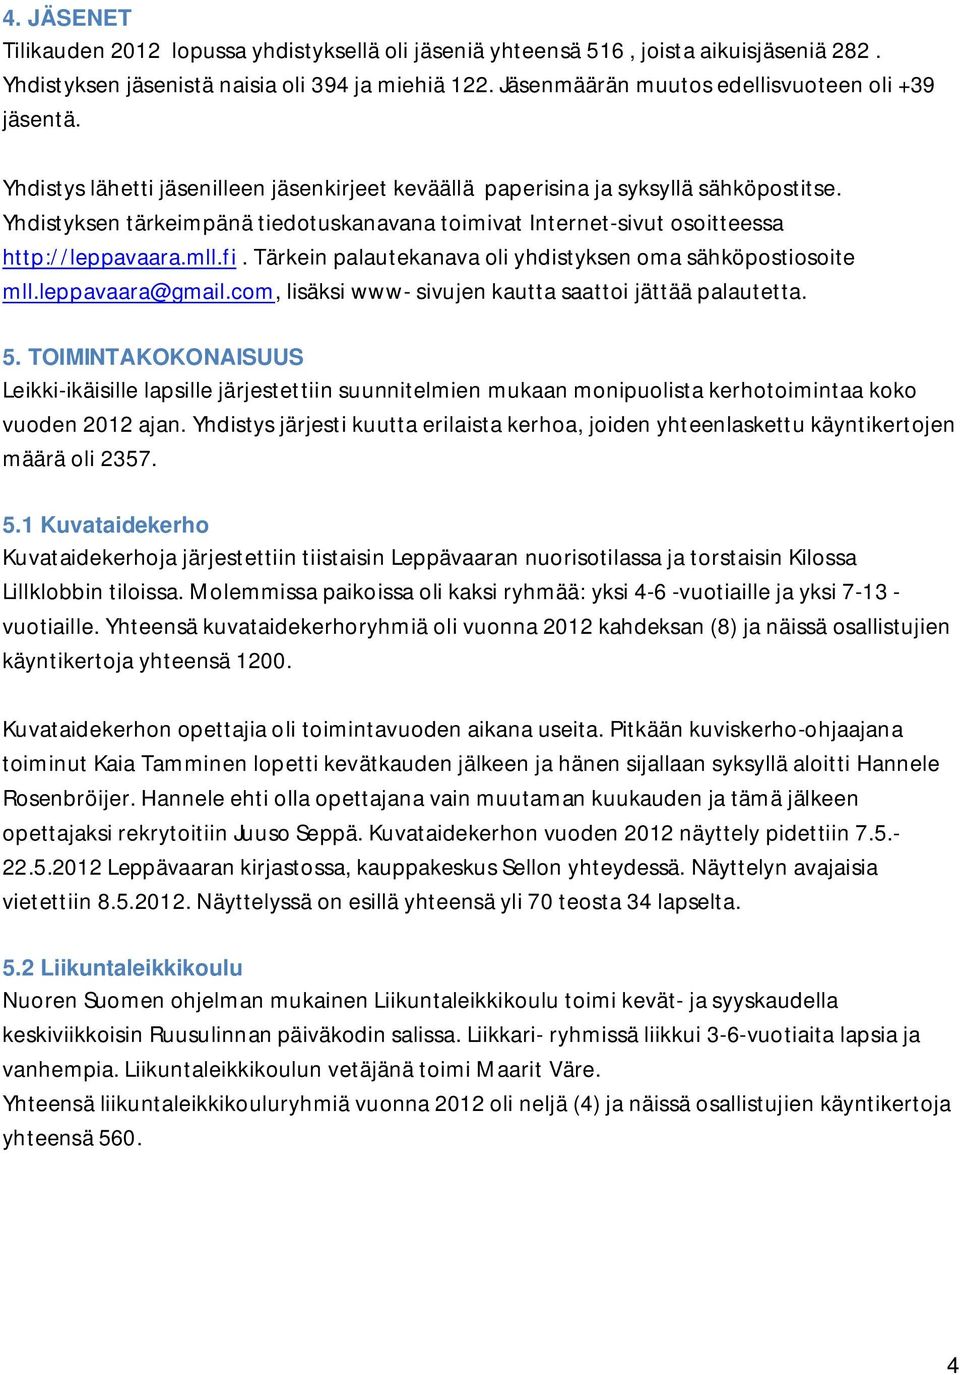 Yhdistyksen tärkeimpänä tiedotuskanavana toimivat Internet-sivut osoitteessa http://leppavaara.mll.fi. Tärkein palautekanava oli yhdistyksen oma sähköpostiosoite mll.leppavaara@gmail.